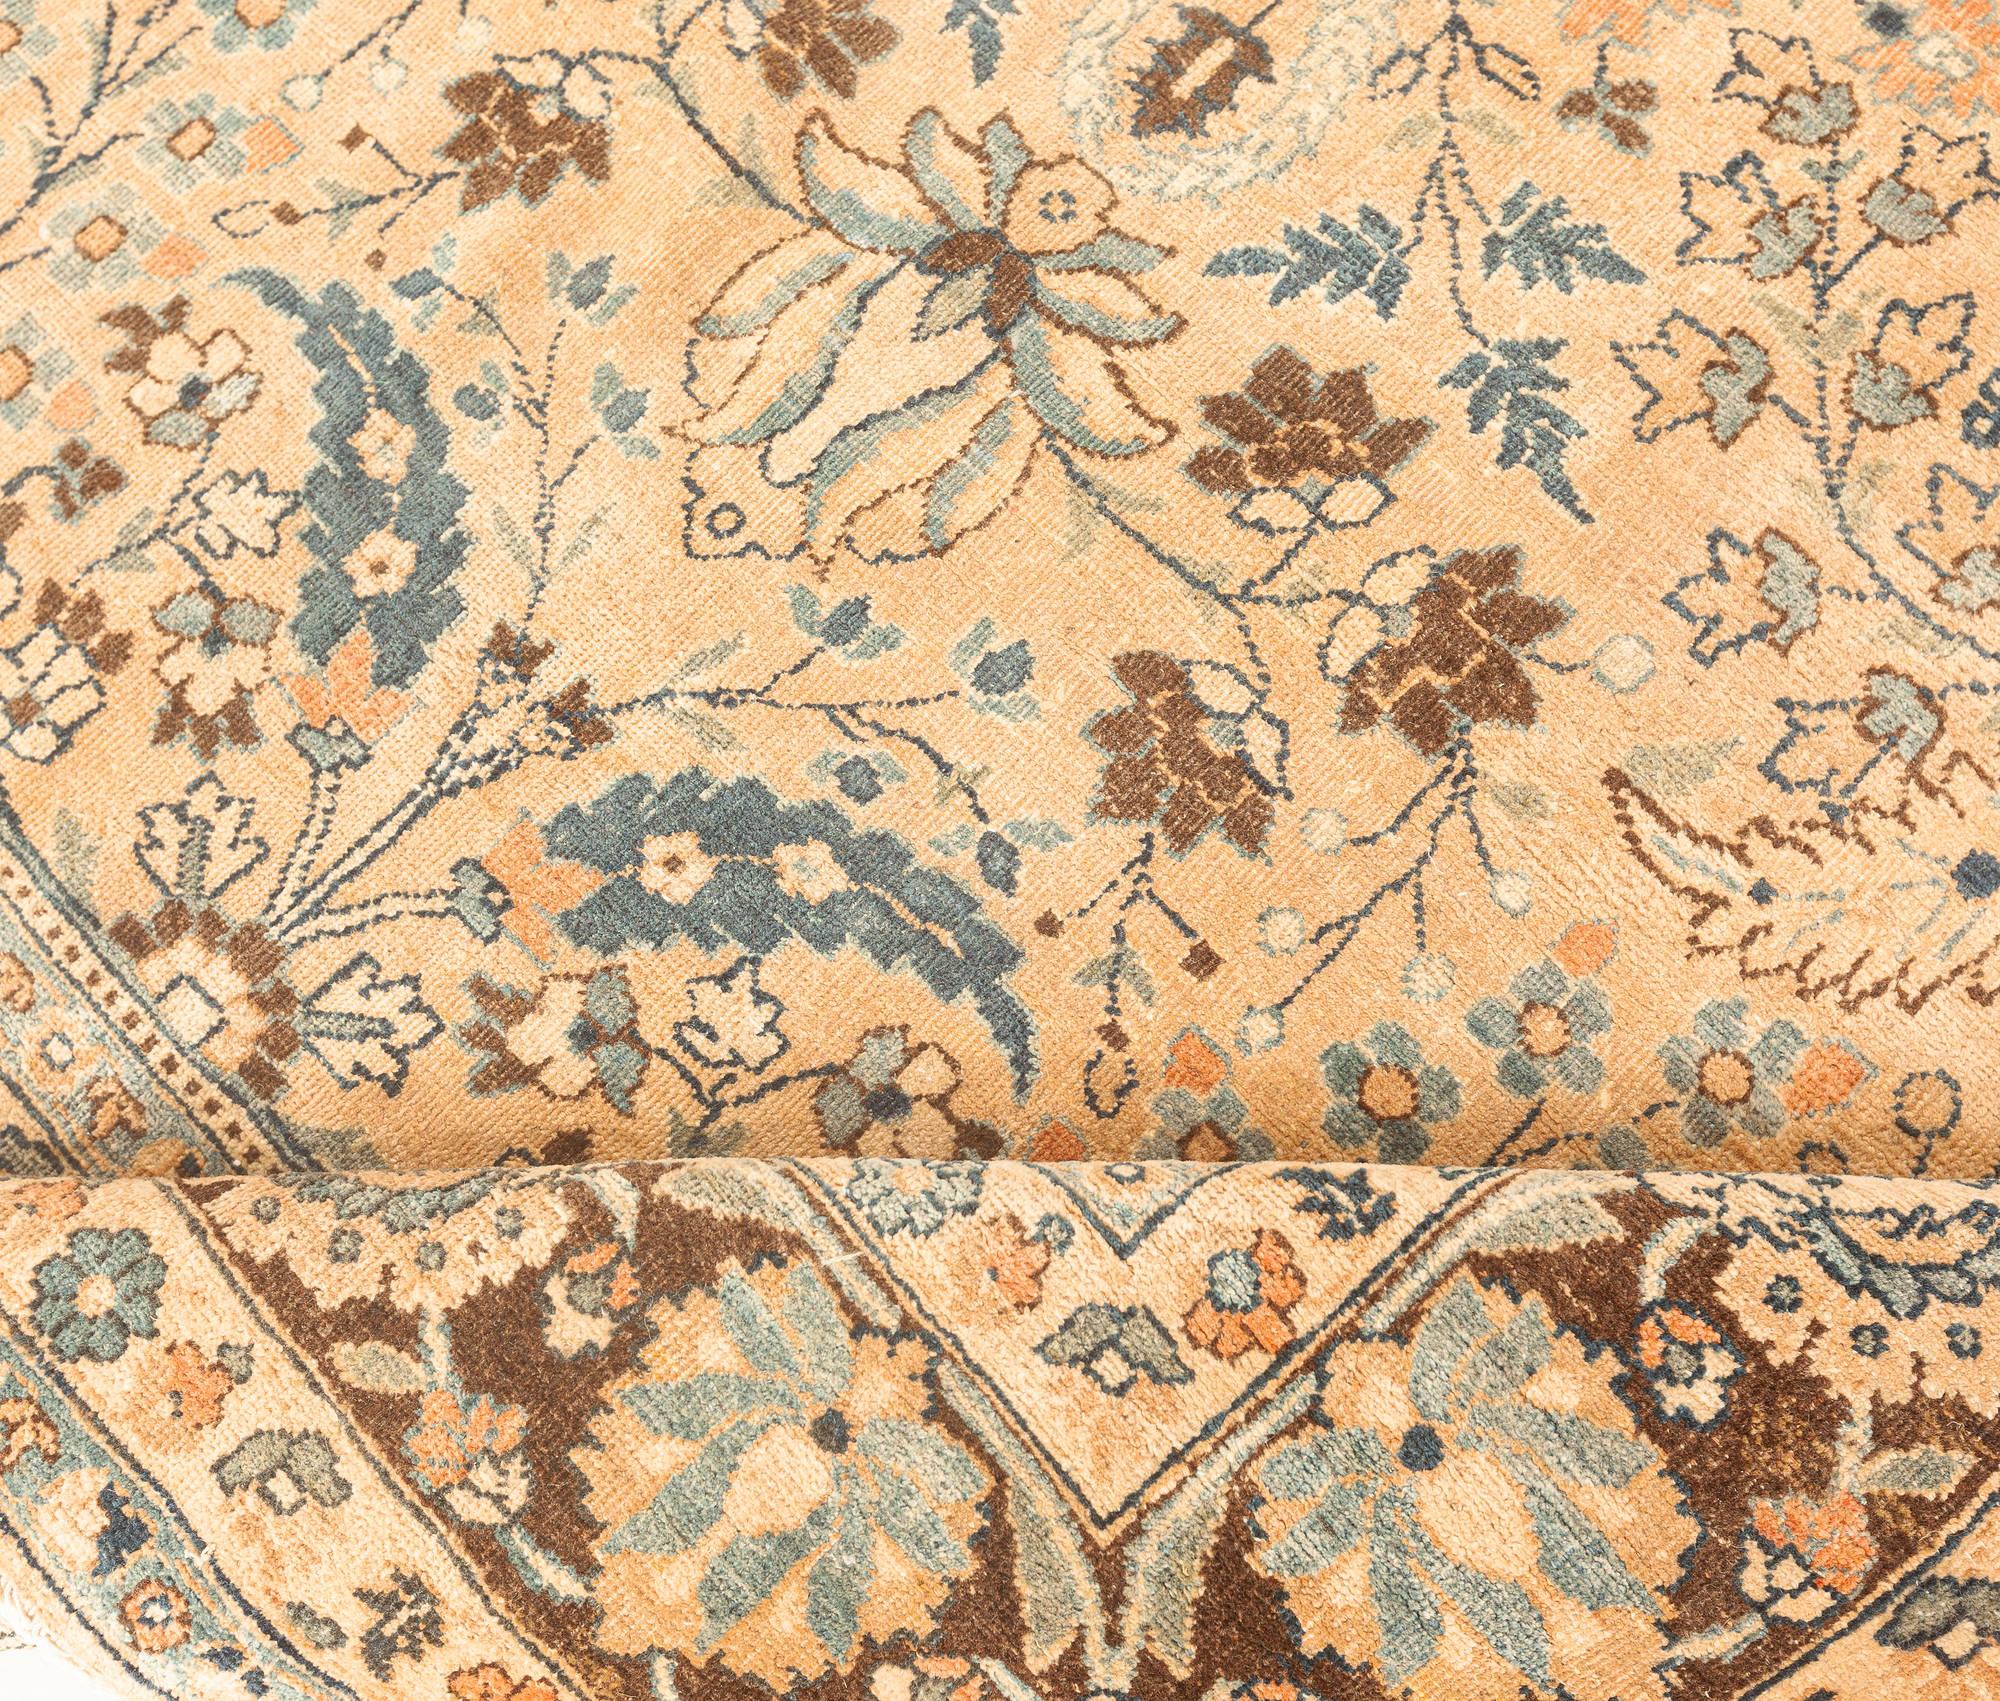 Vintage Persian Meshad Botanic Handmade Wool Carpet
Size: 9'5